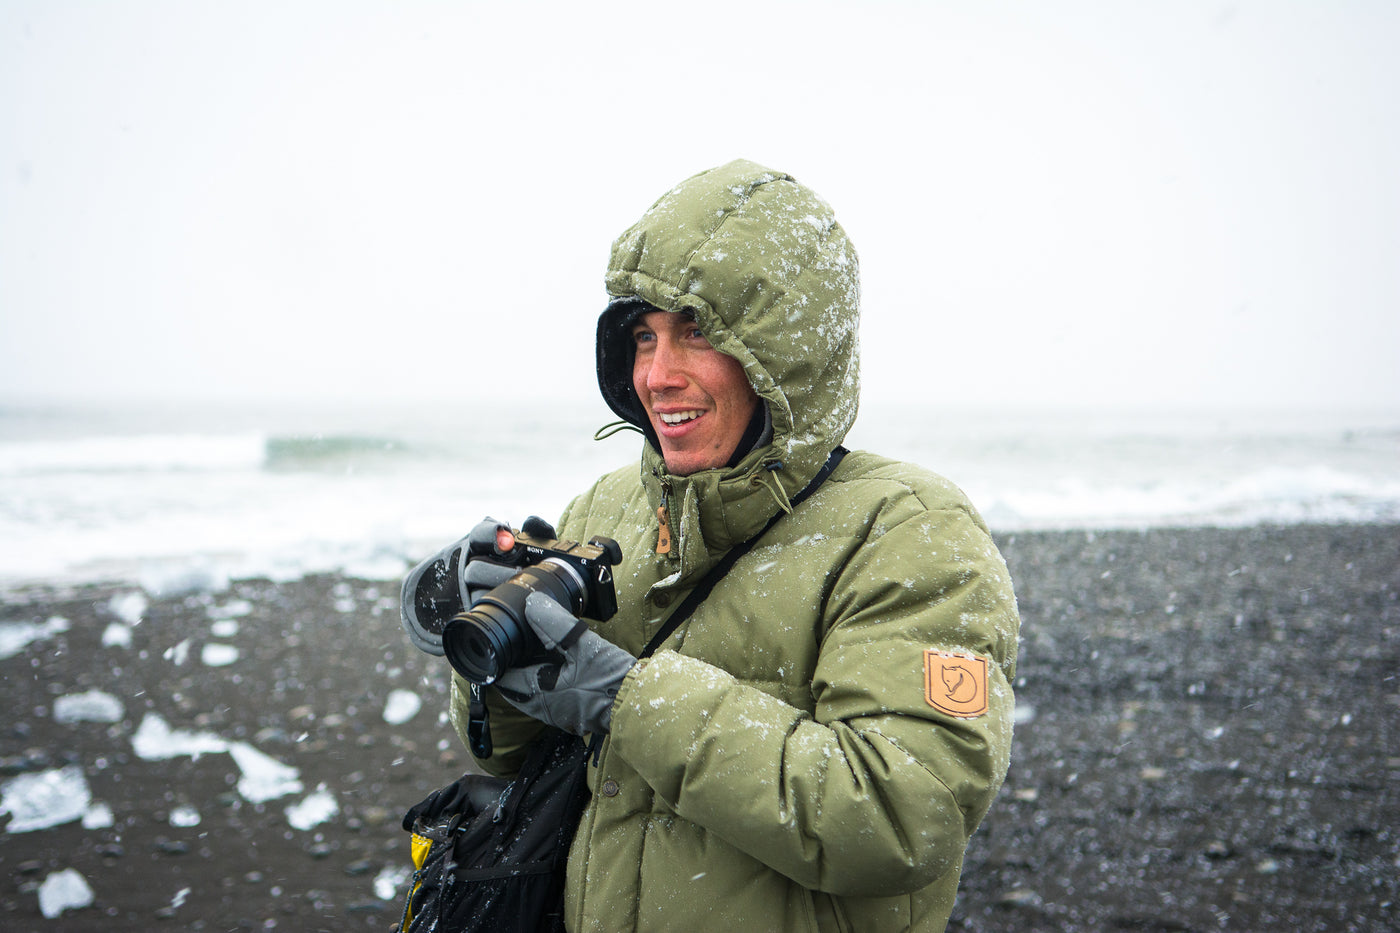 Chris Burkard: Surf Photographer, World Traveler, SurfEars Ambassador